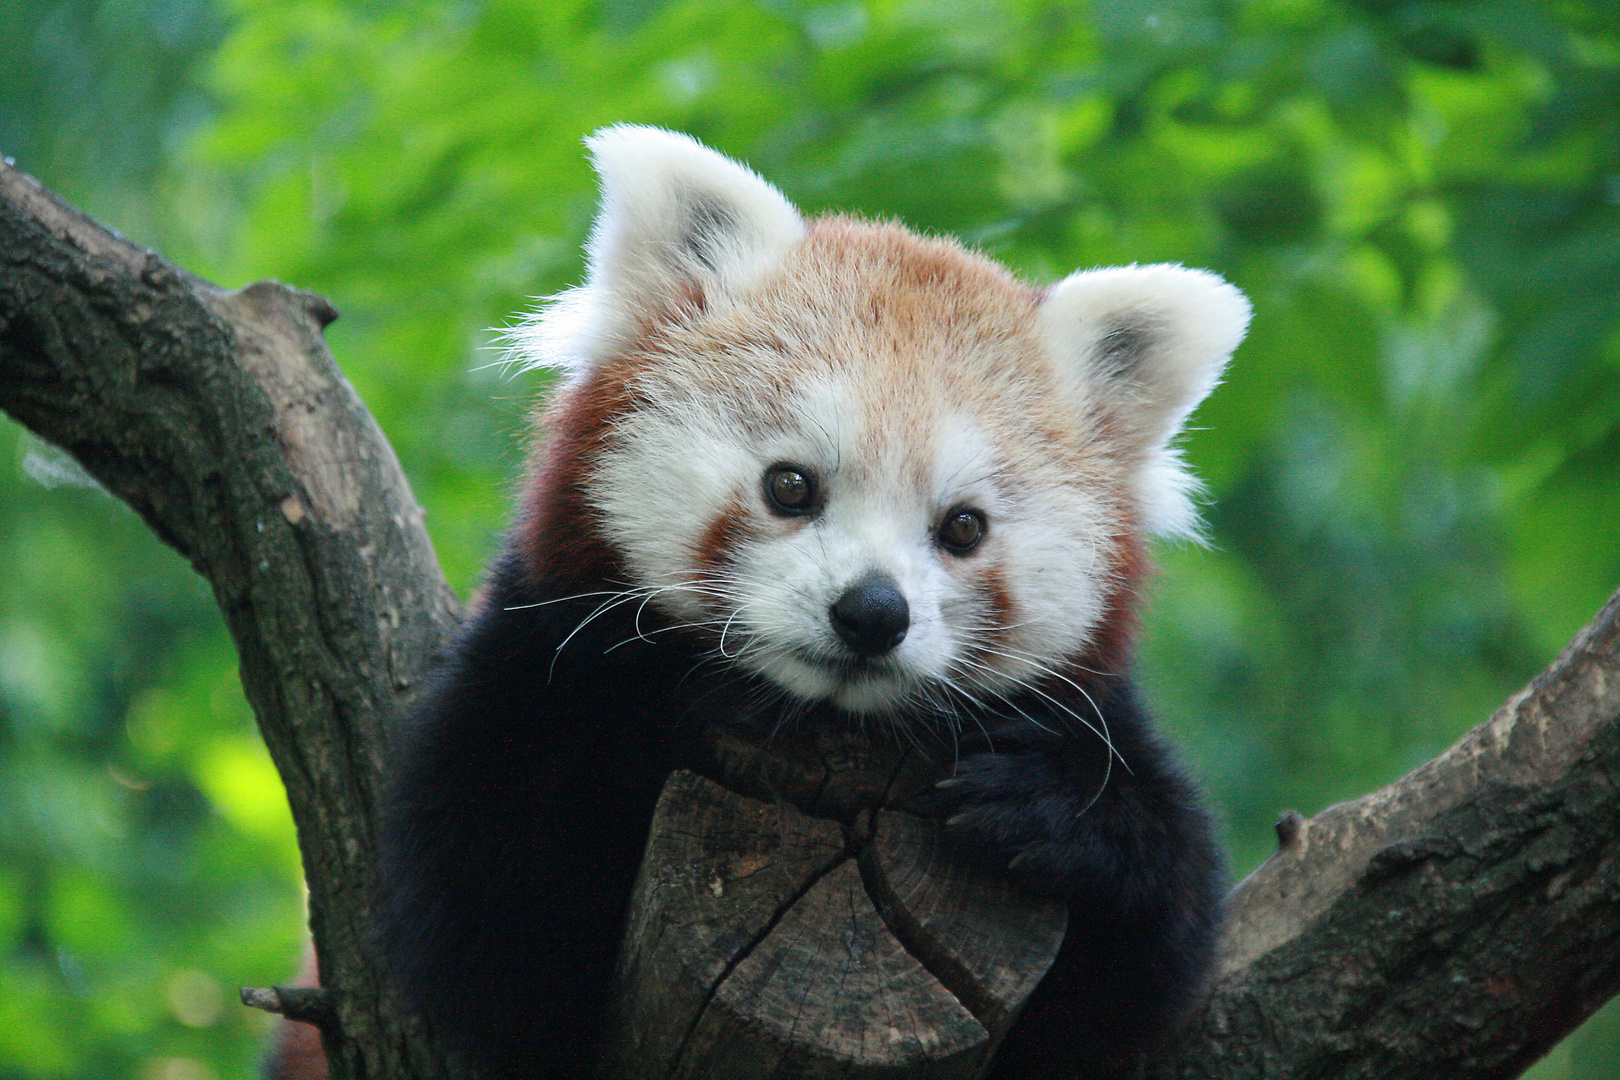 kein Plüsch ;-) sondern ein Roter Panda